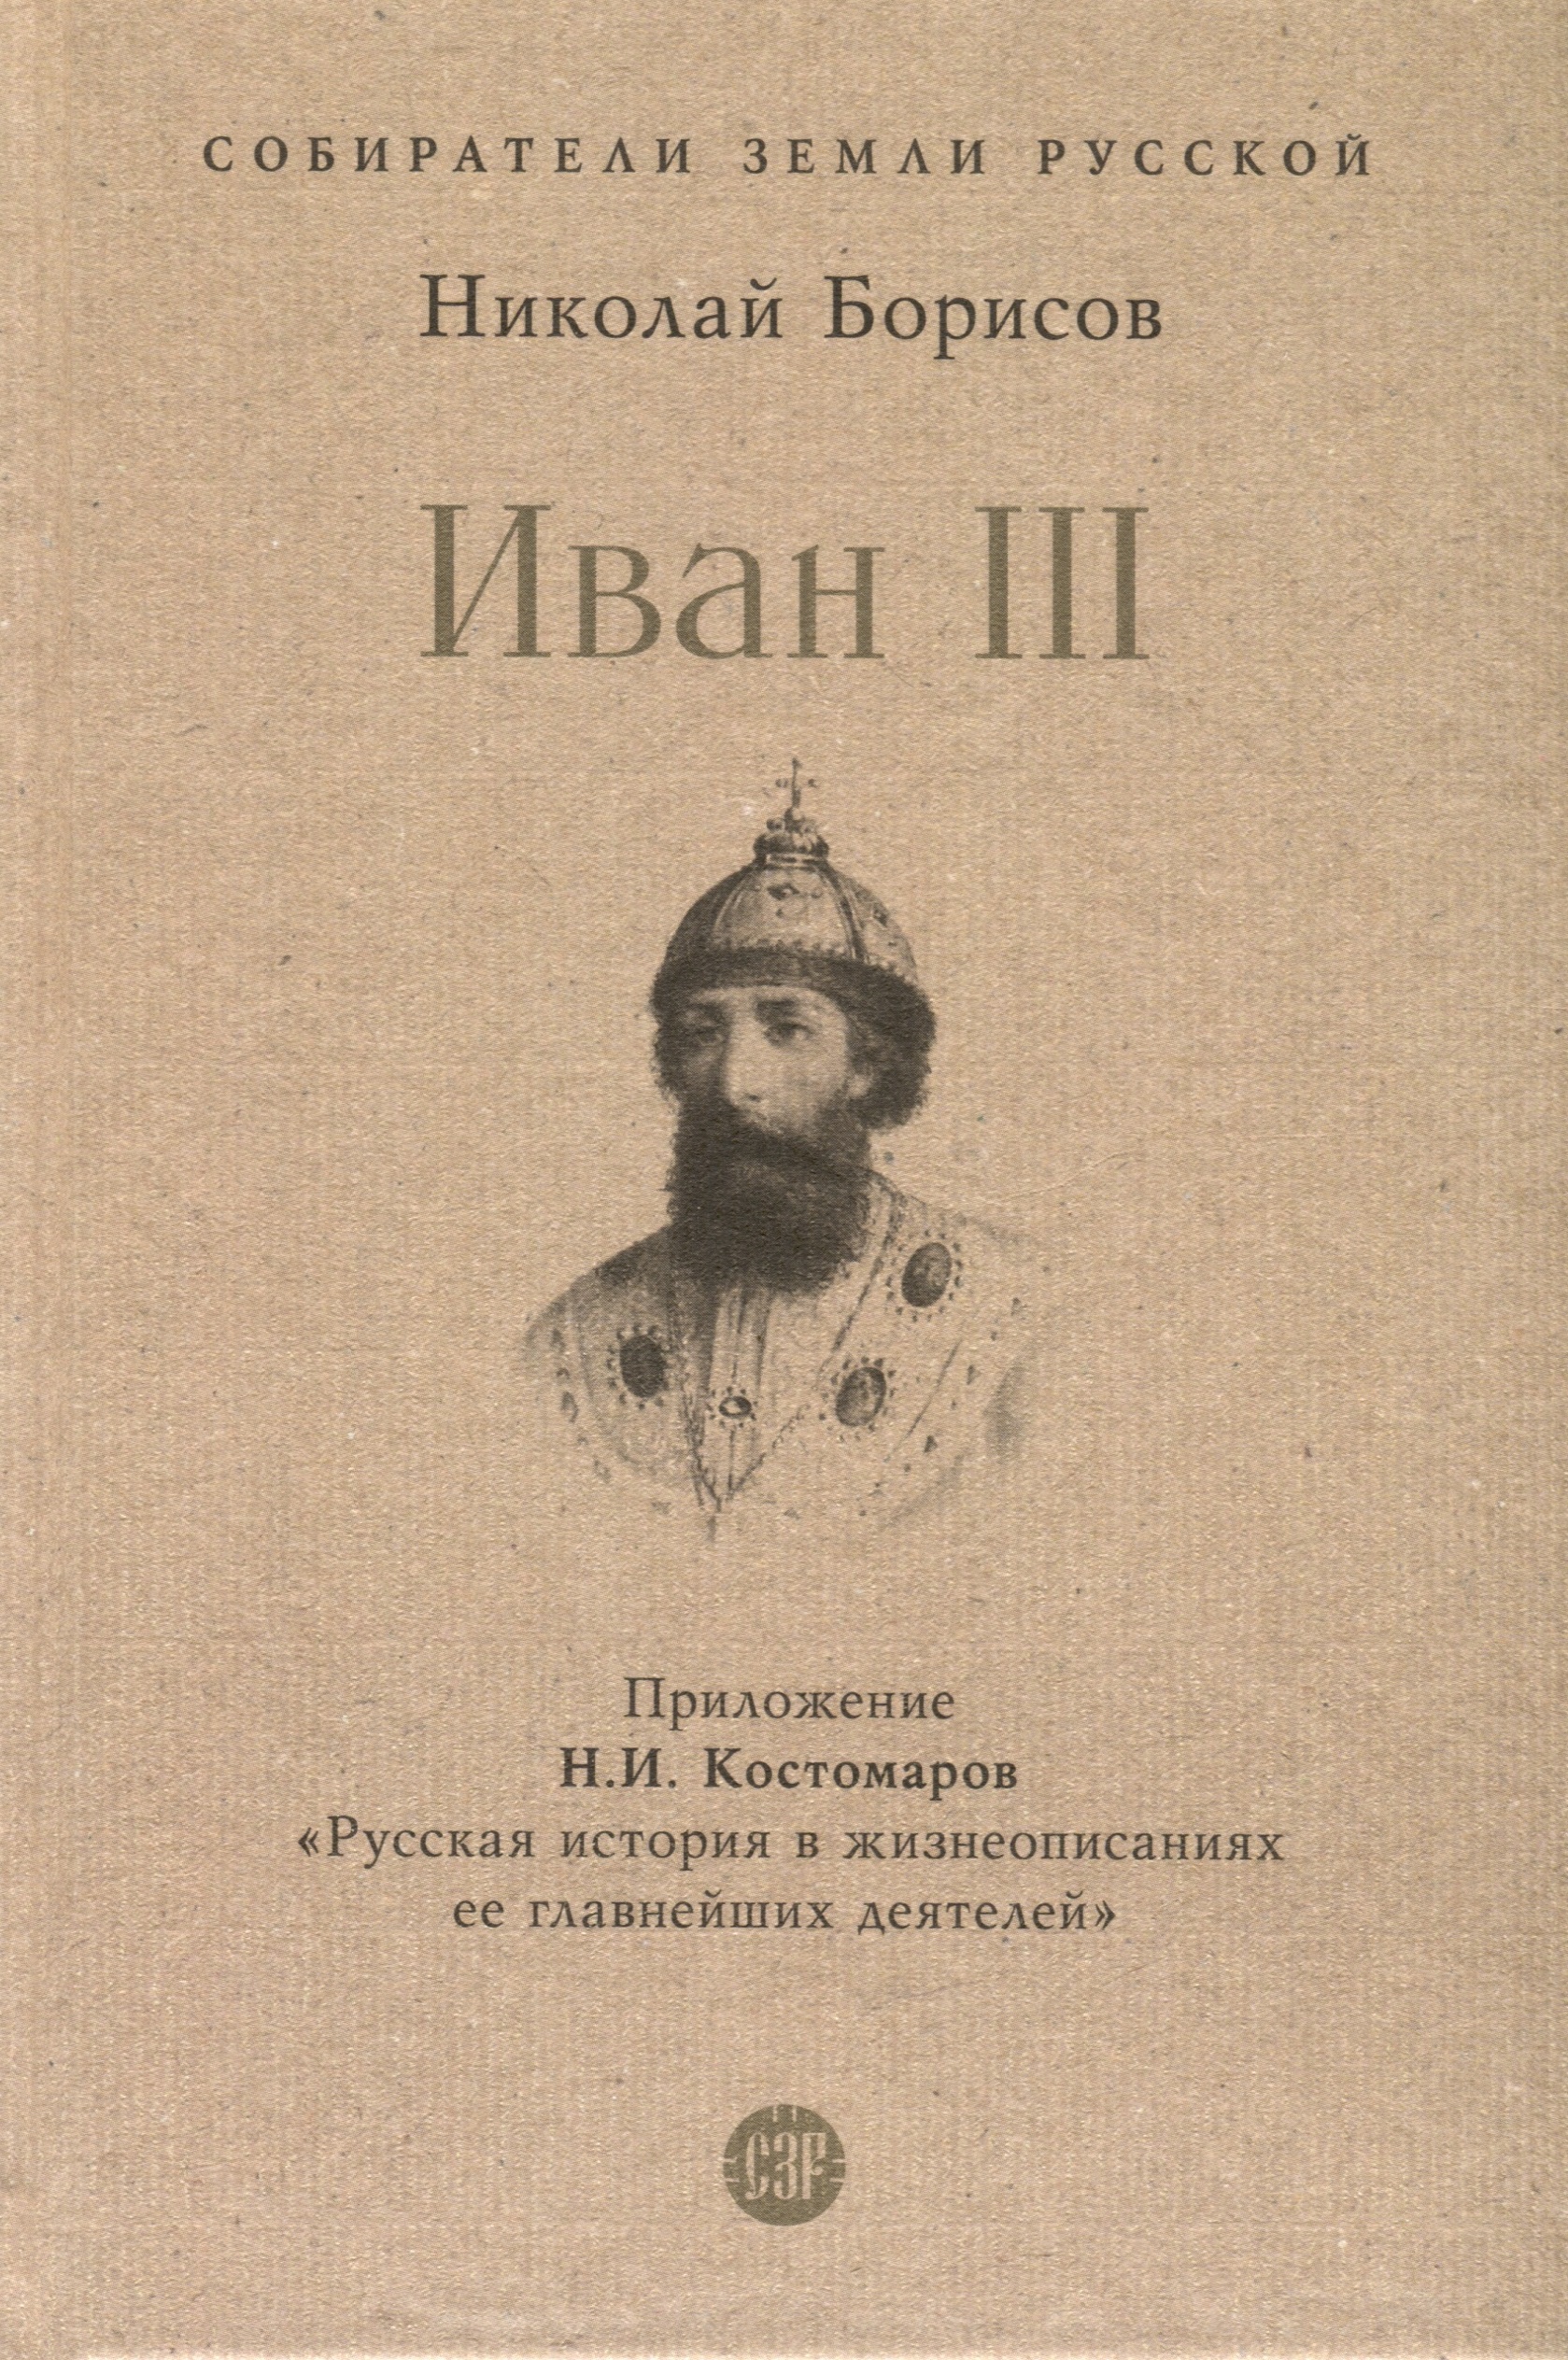 Иван III мартиросова мария альбертовна иван iii государь всея руси